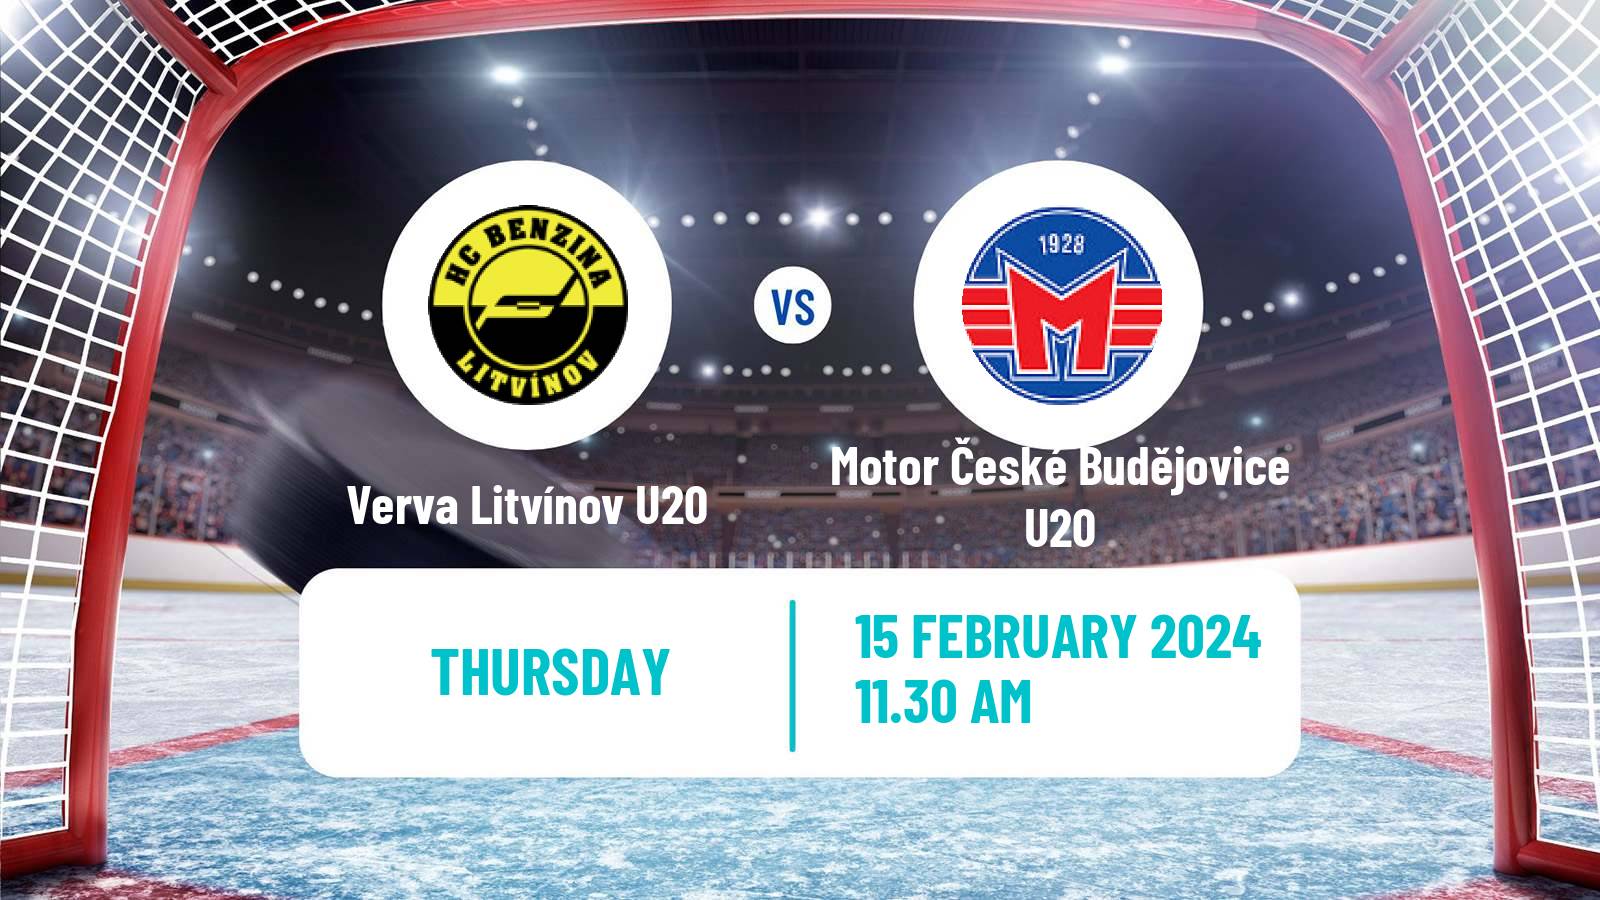 Hockey Czech ELJ Verva Litvínov U20 - Motor České Budějovice U20